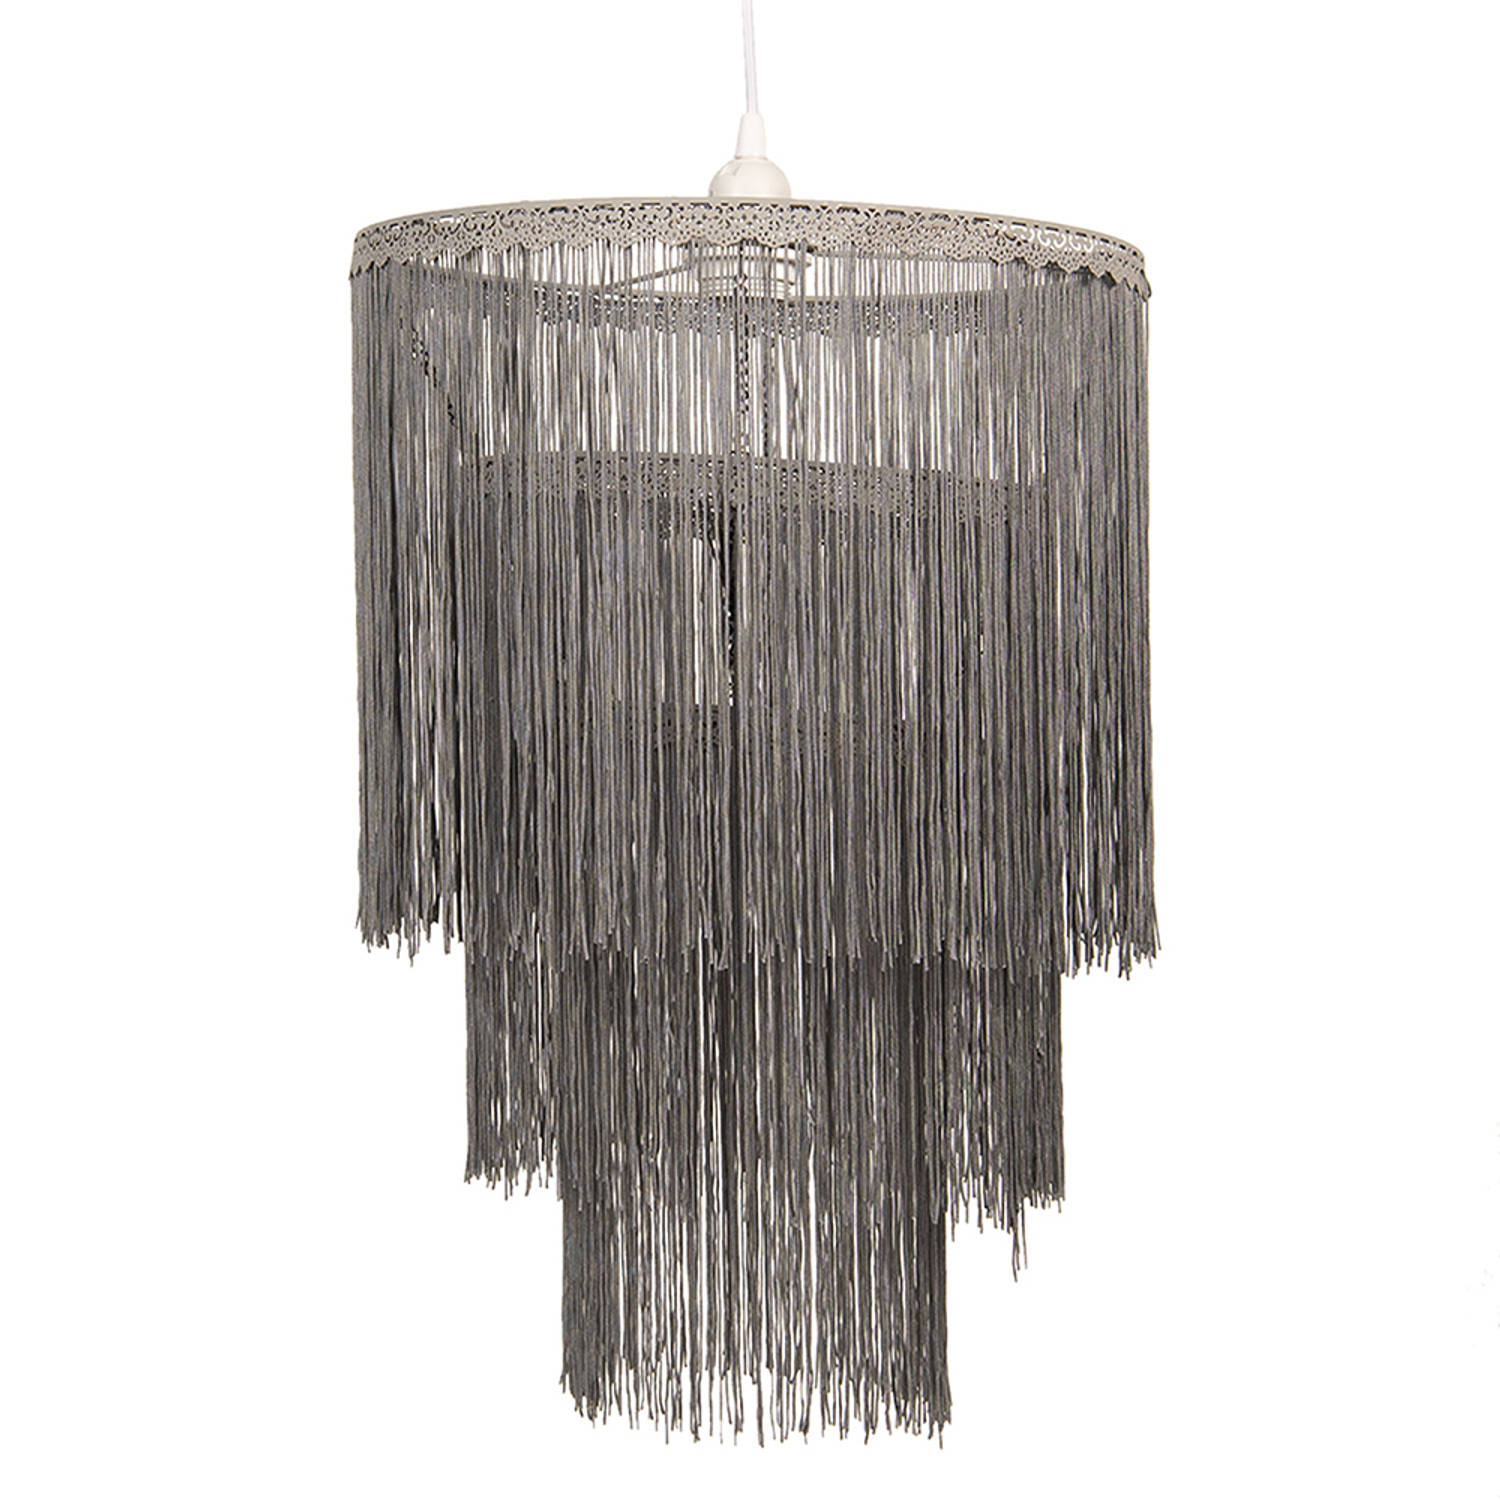 HAES DECO - Hanglamp - Dramatic Chic - Trendy Lamp, formaat Ø 35x45 cm - Grijs Metaal en Textiel - Ronde Hanglamp Eettafel, Hanglamp Eetkamer